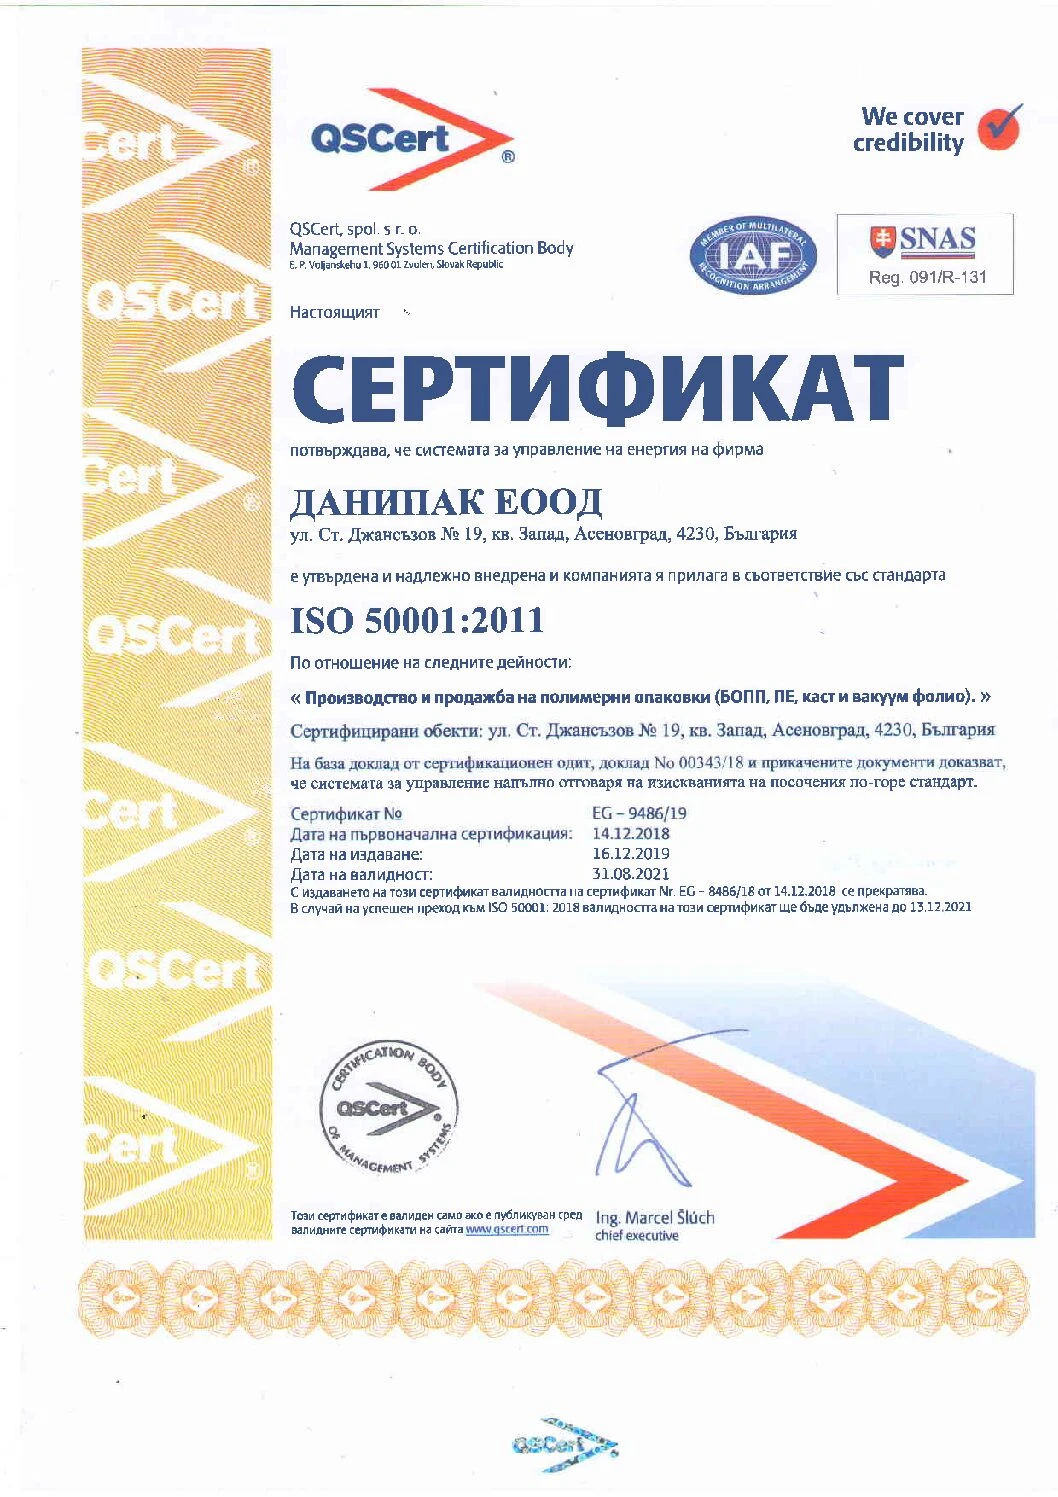 607-сертификат1-pdf-17060162875339.jpg